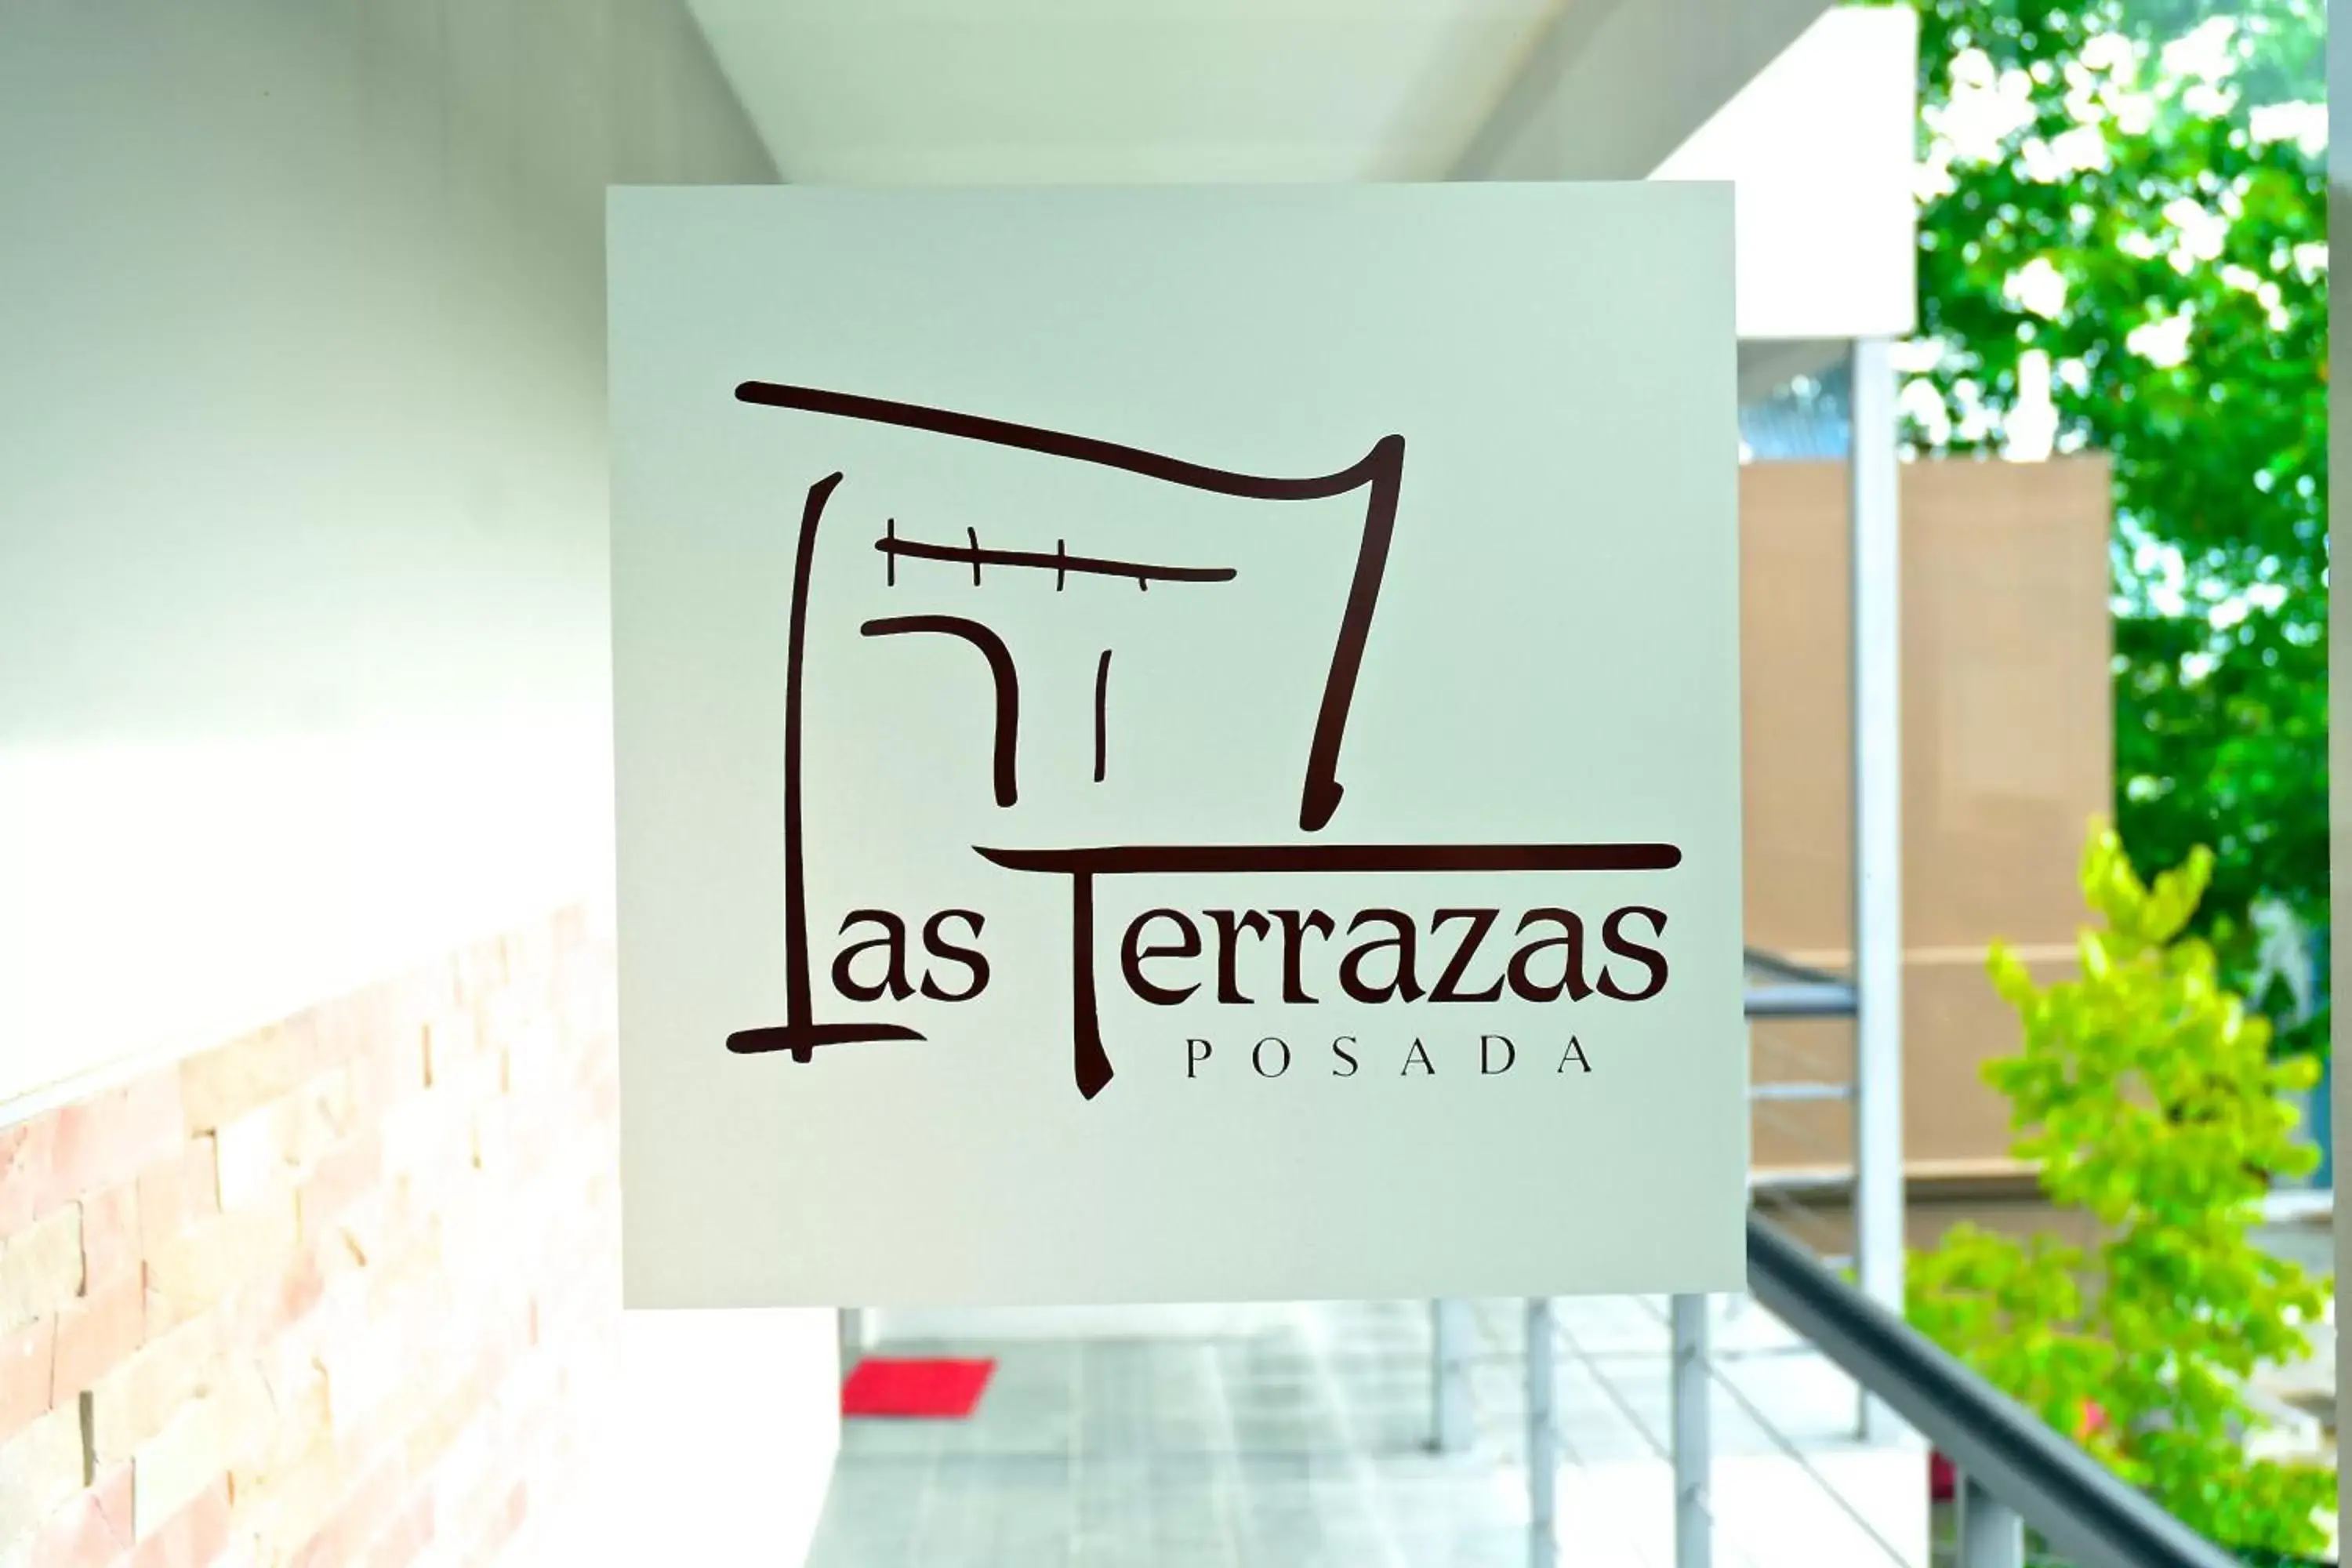 Property logo or sign, Logo/Certificate/Sign/Award in Posada Boutique Las Terrazas